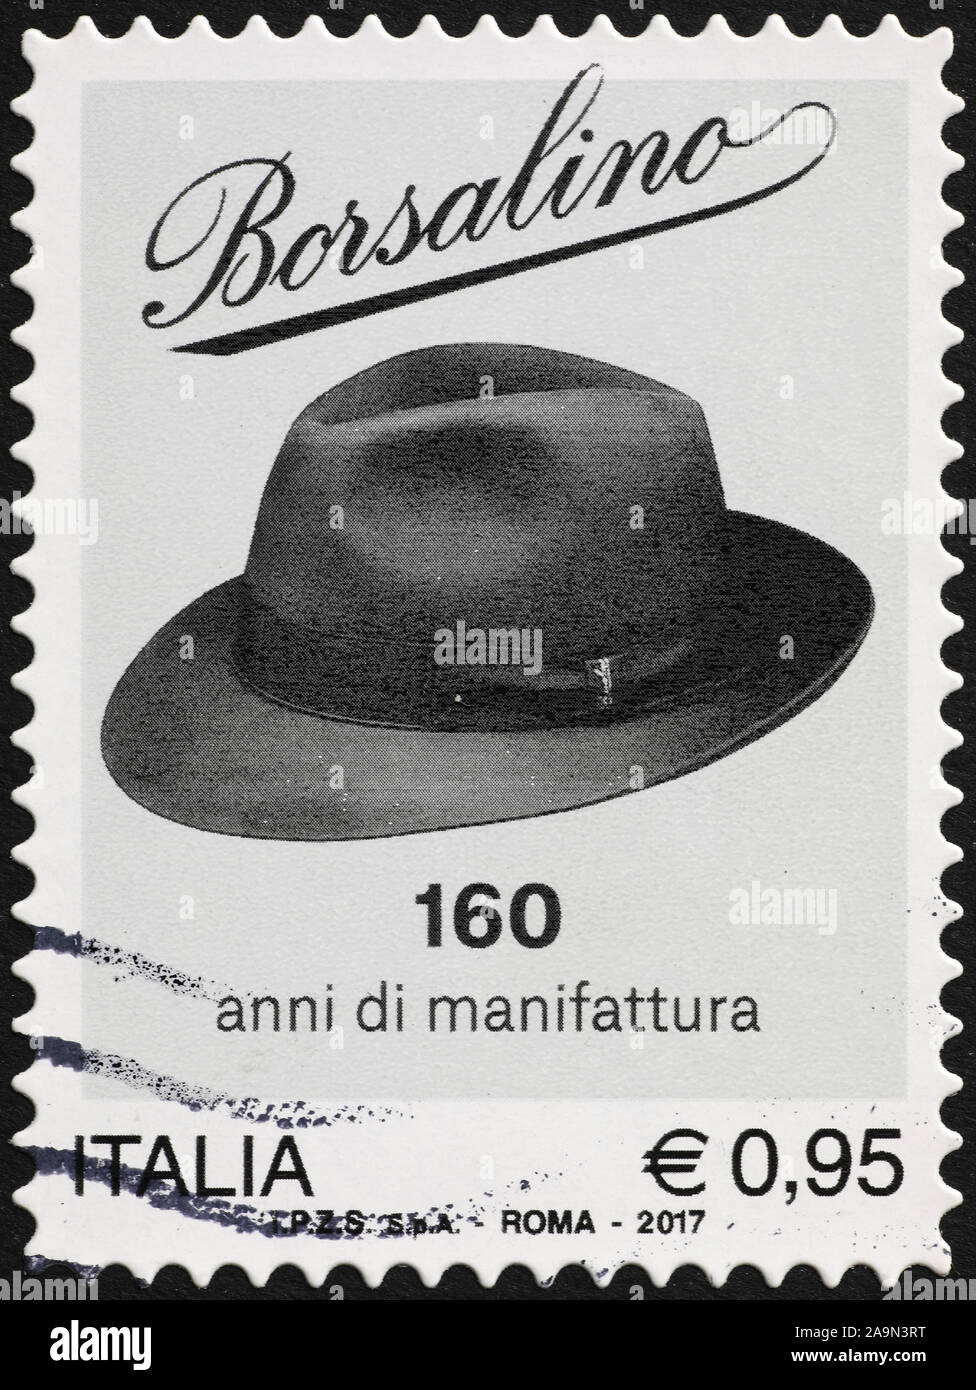 Chapeau de luxe par Borsalino sur timbre-poste italien Photo Stock - Alamy